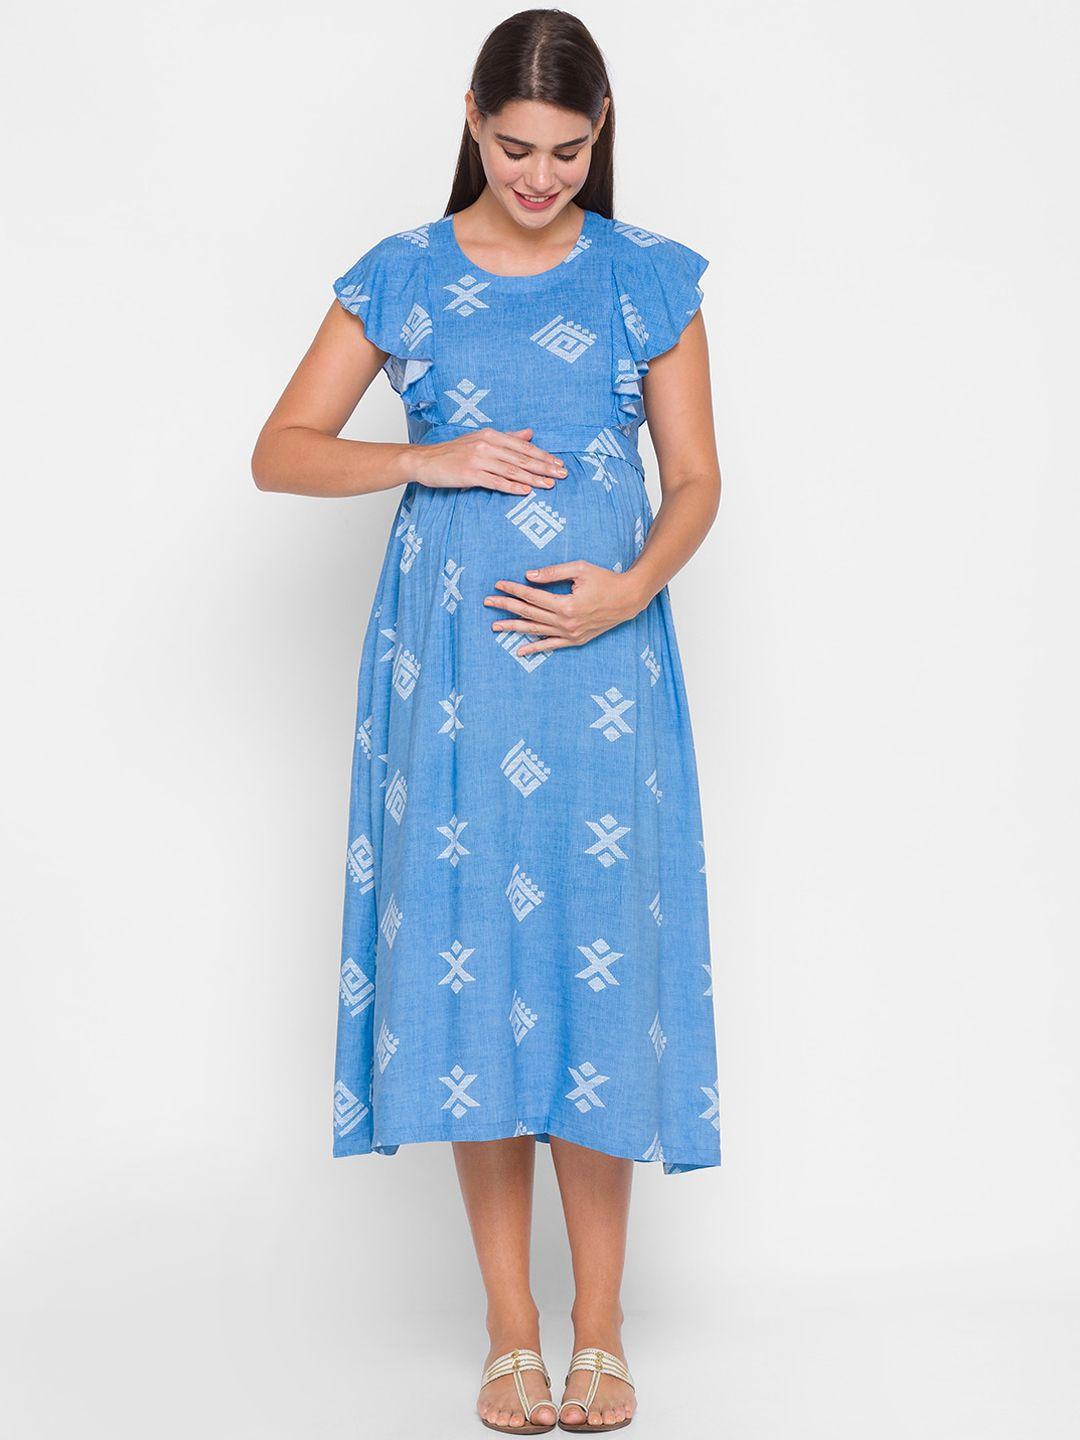 av2 blue & white geometric round neck maternity fit & flare dress